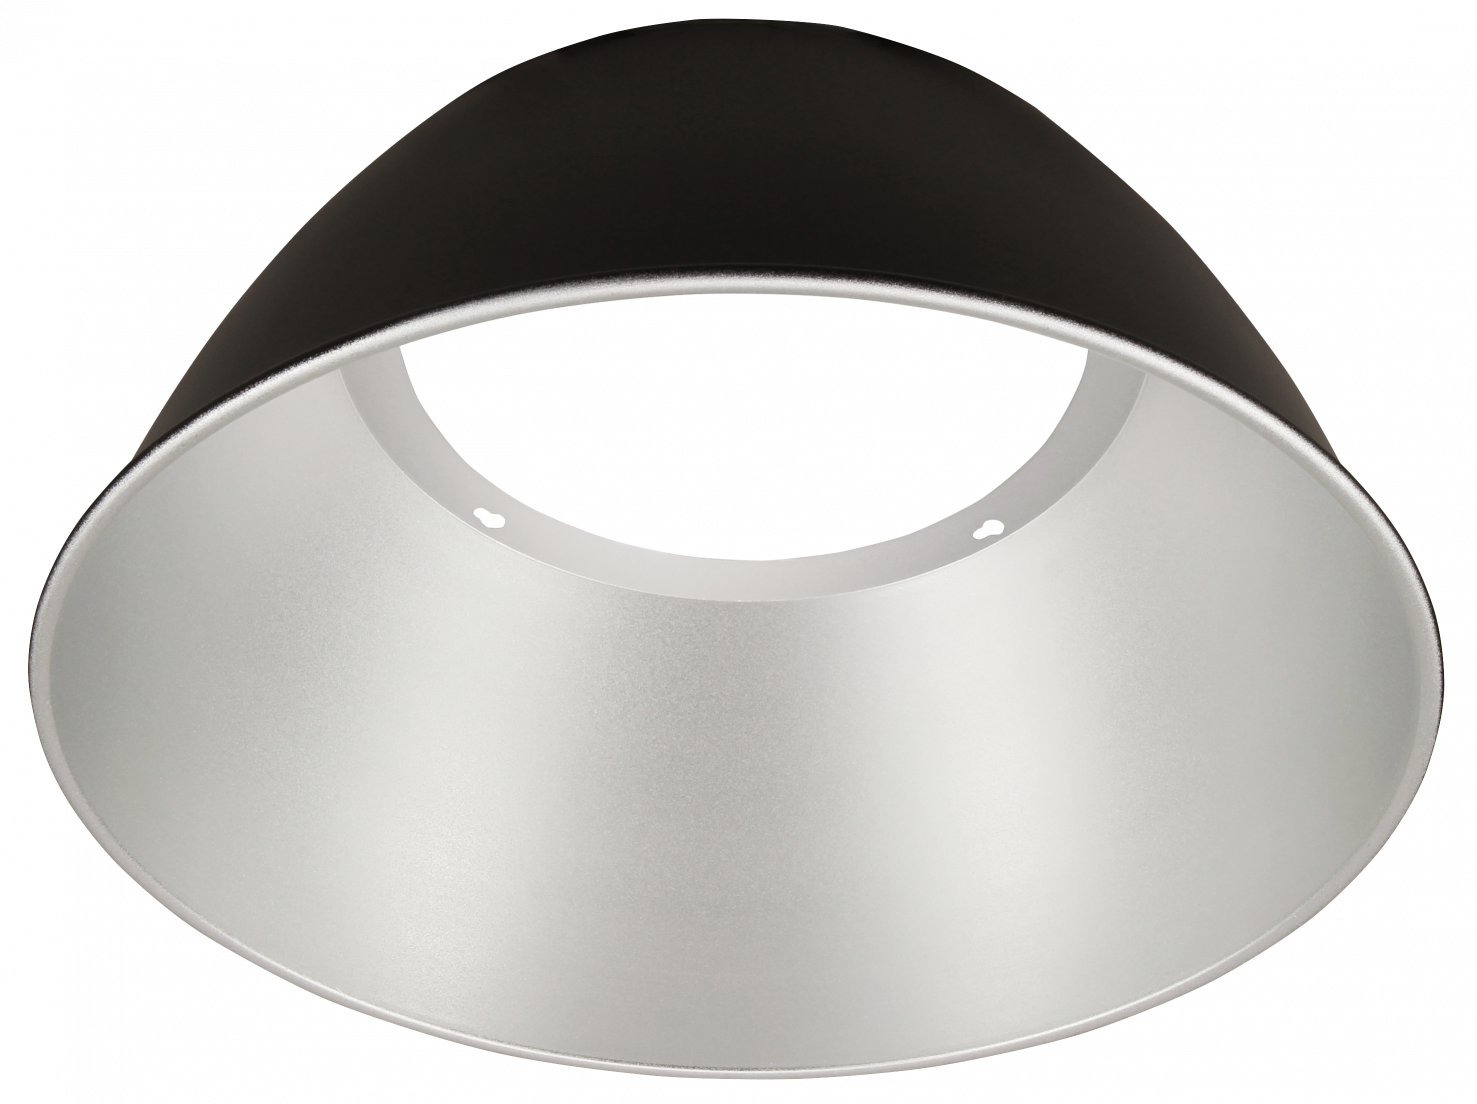 Reflektor für LEDeco UFO-Hallenstrahler, 60°, passend für alle Wattagen